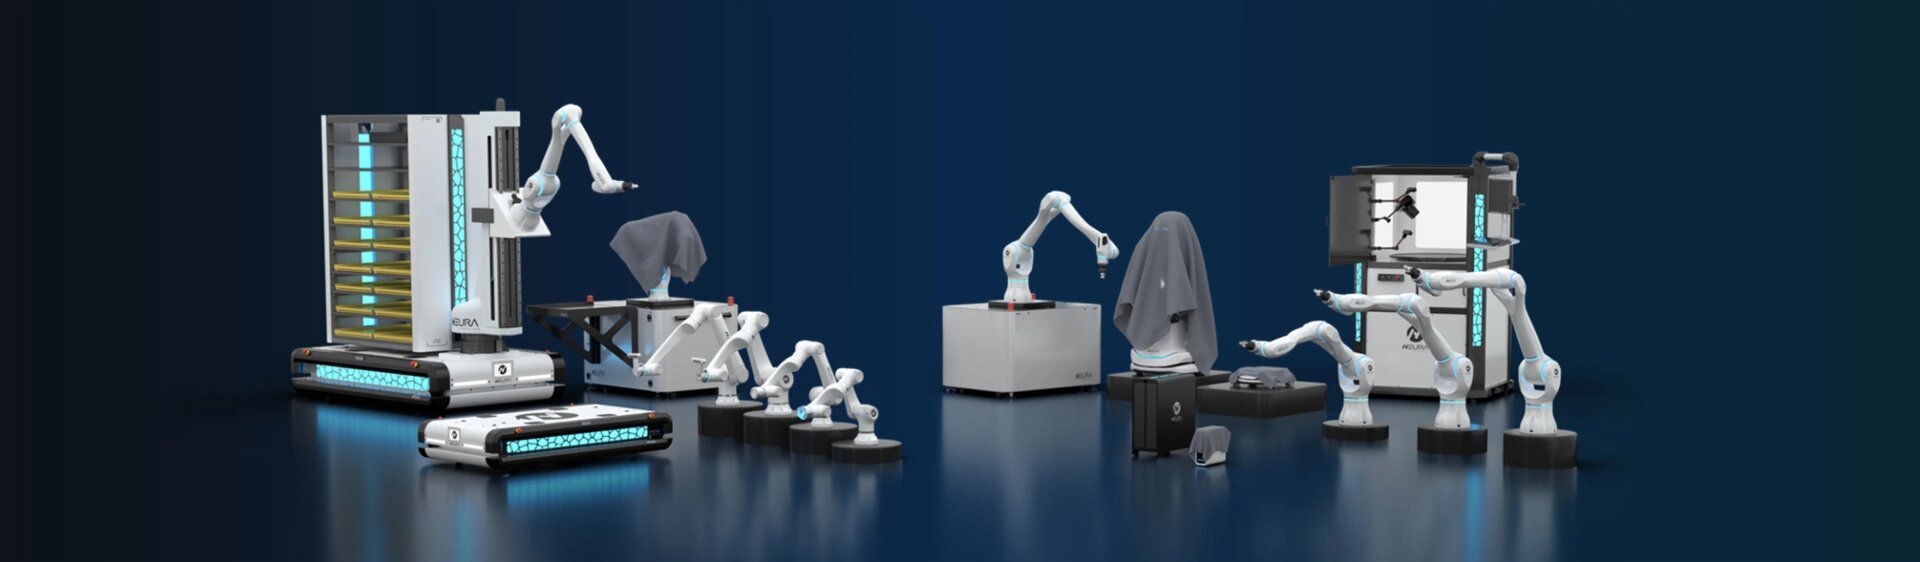 NEURA Robotics product family